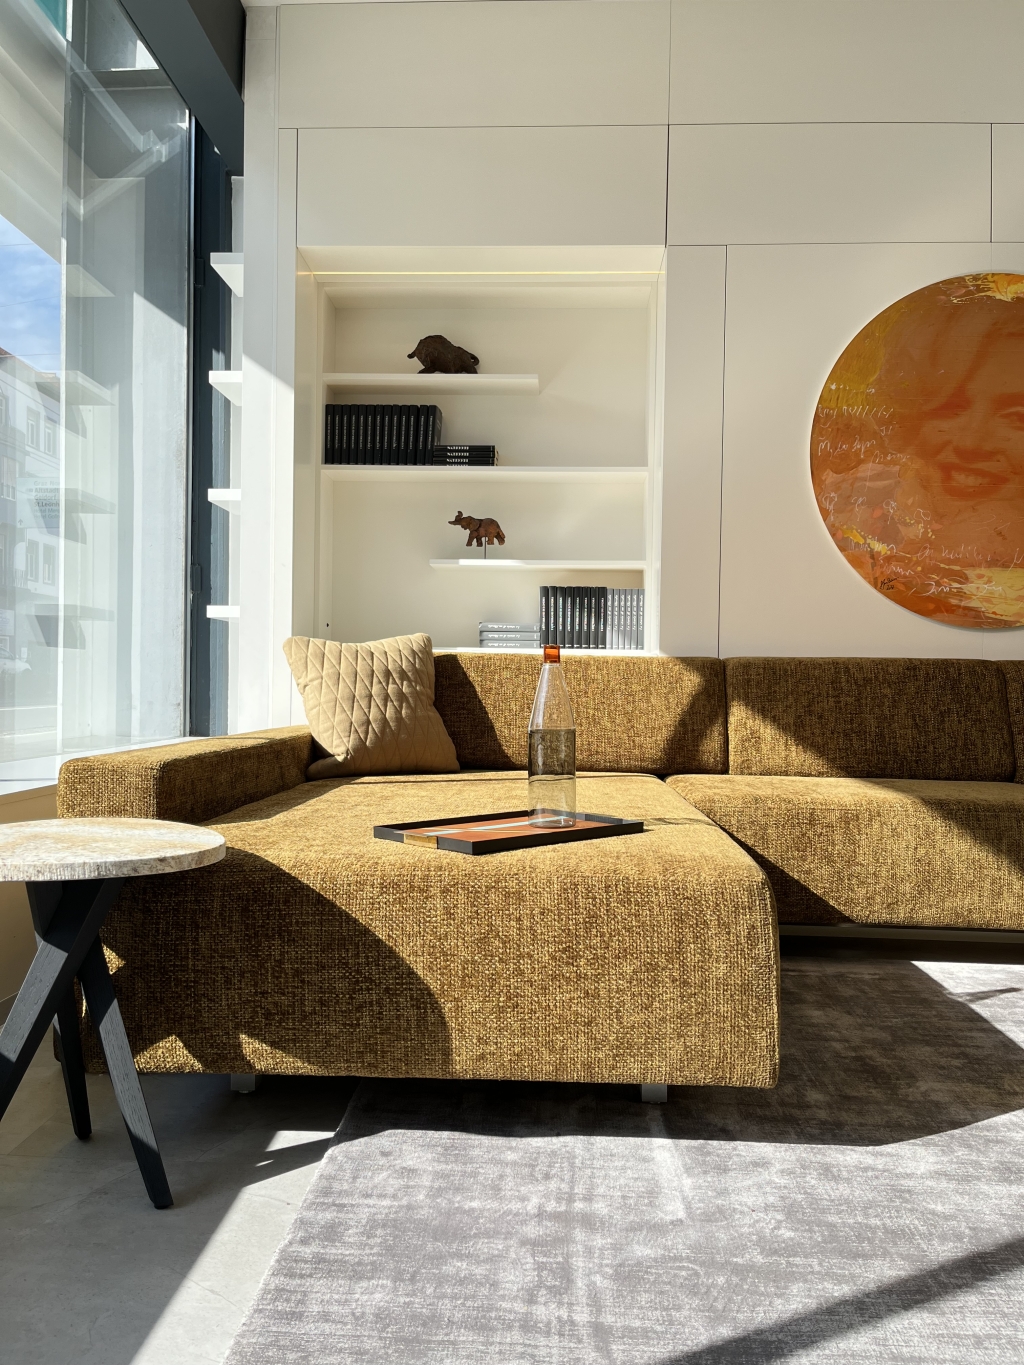 Ein gemütliches, modernes Wohnzimmer in natürlichem Sonnenlicht, mit einer stilvollen strukturierten Couch mit bequemen Kissen, einem eleganten Beistelltisch und schicken Regalen mit minimalistischem Dekor, ergänzt durch ein lebendiges kreisförmiges Kunstwerk an der Wand.